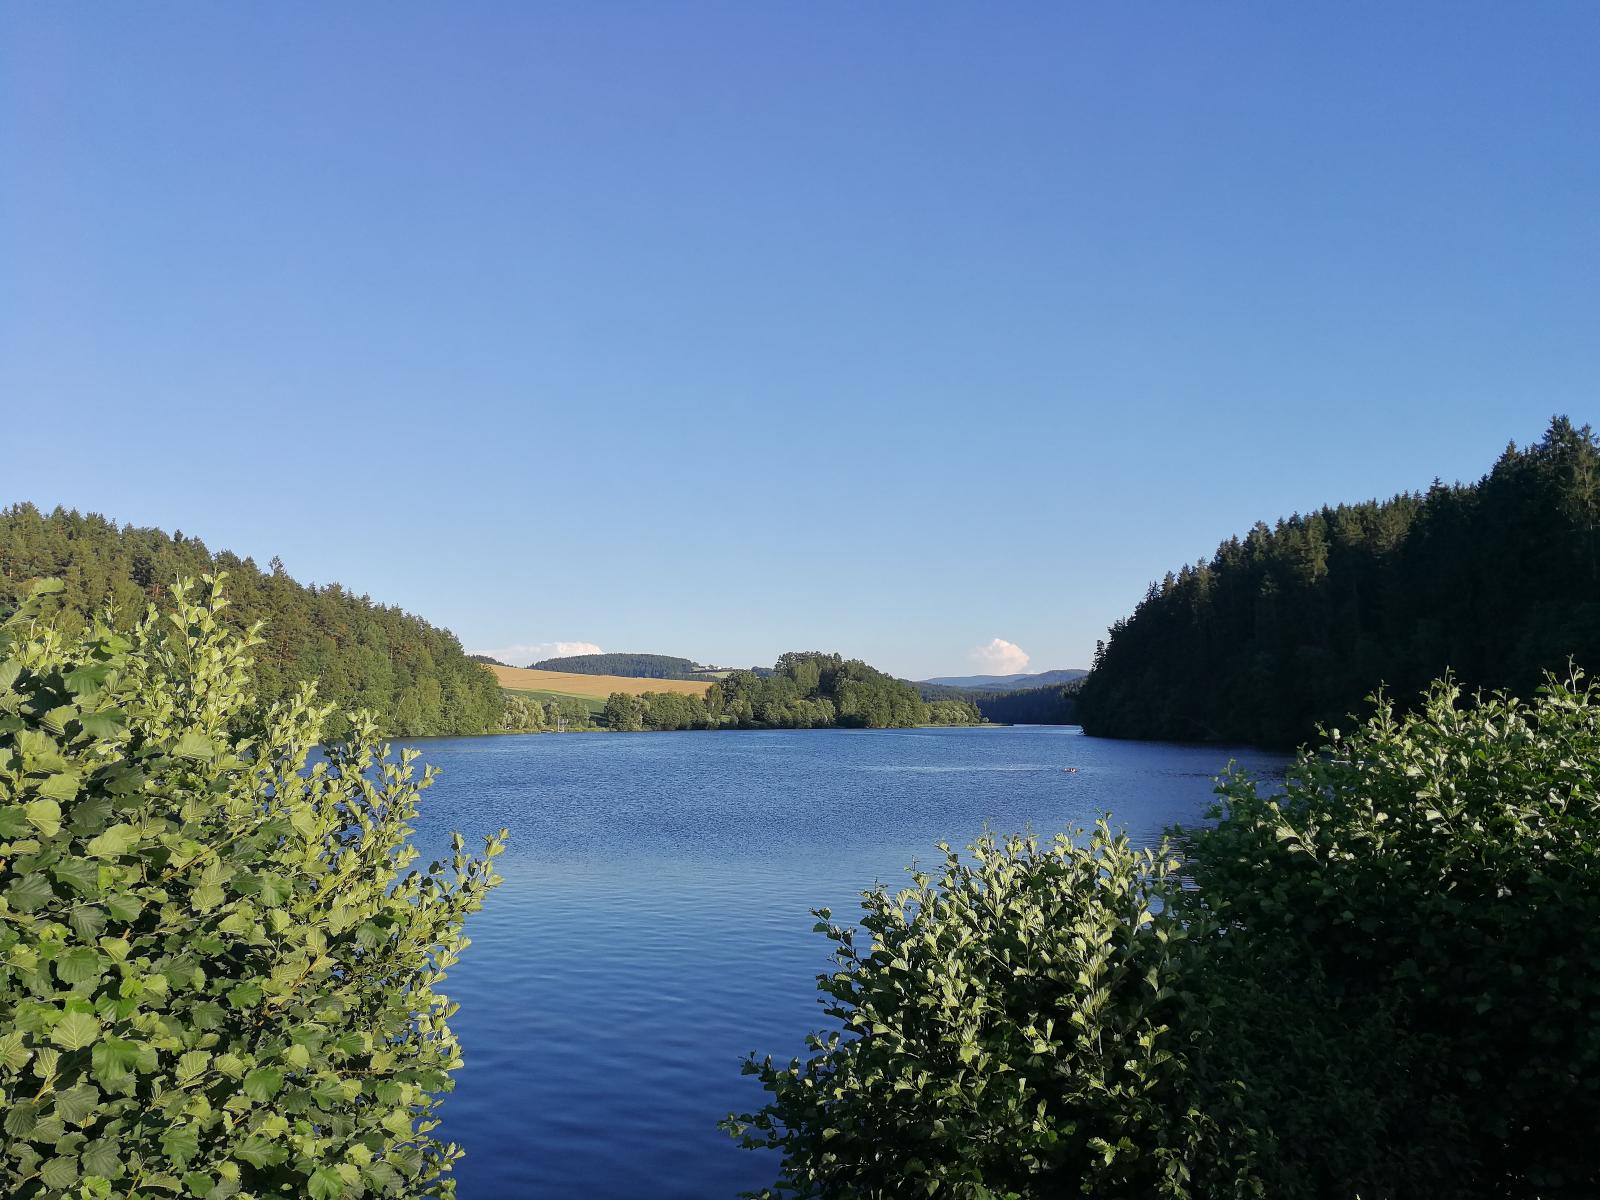 Waldheimat in Miltach